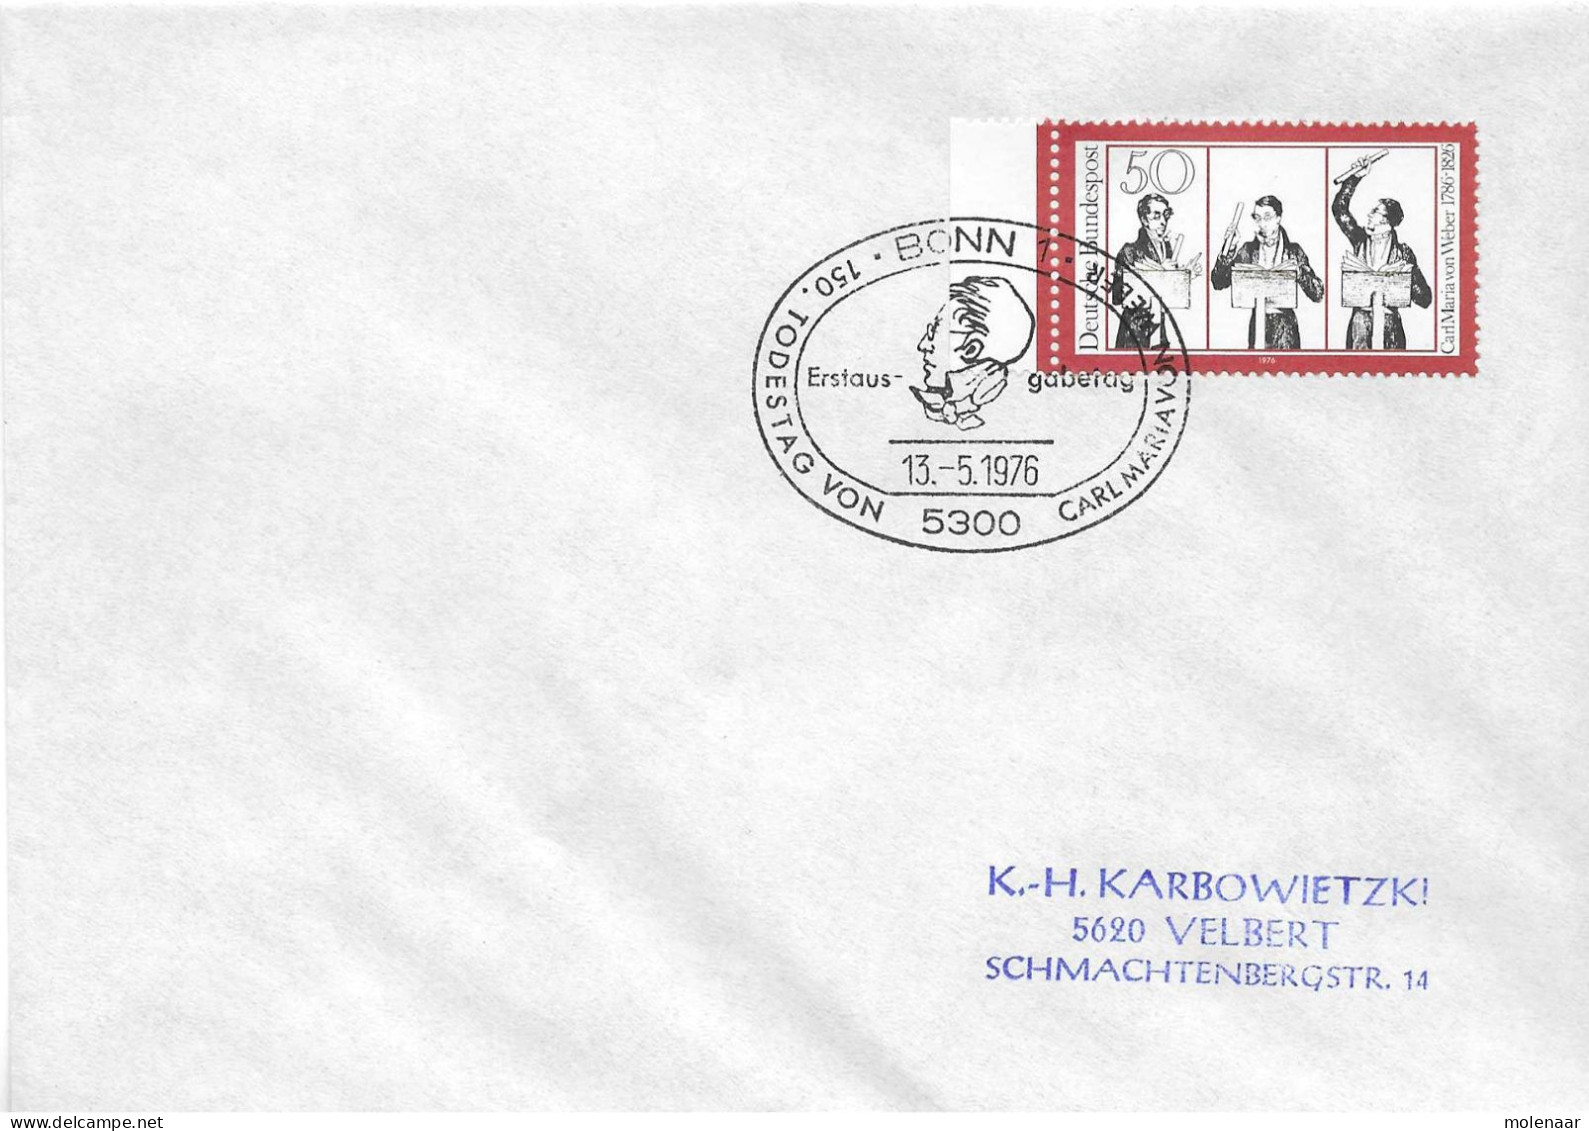 Postzegels > Europa > Duitsland > West-Duitsland > 1970-1979 > Brief Met No. 894  (17354) - Briefe U. Dokumente